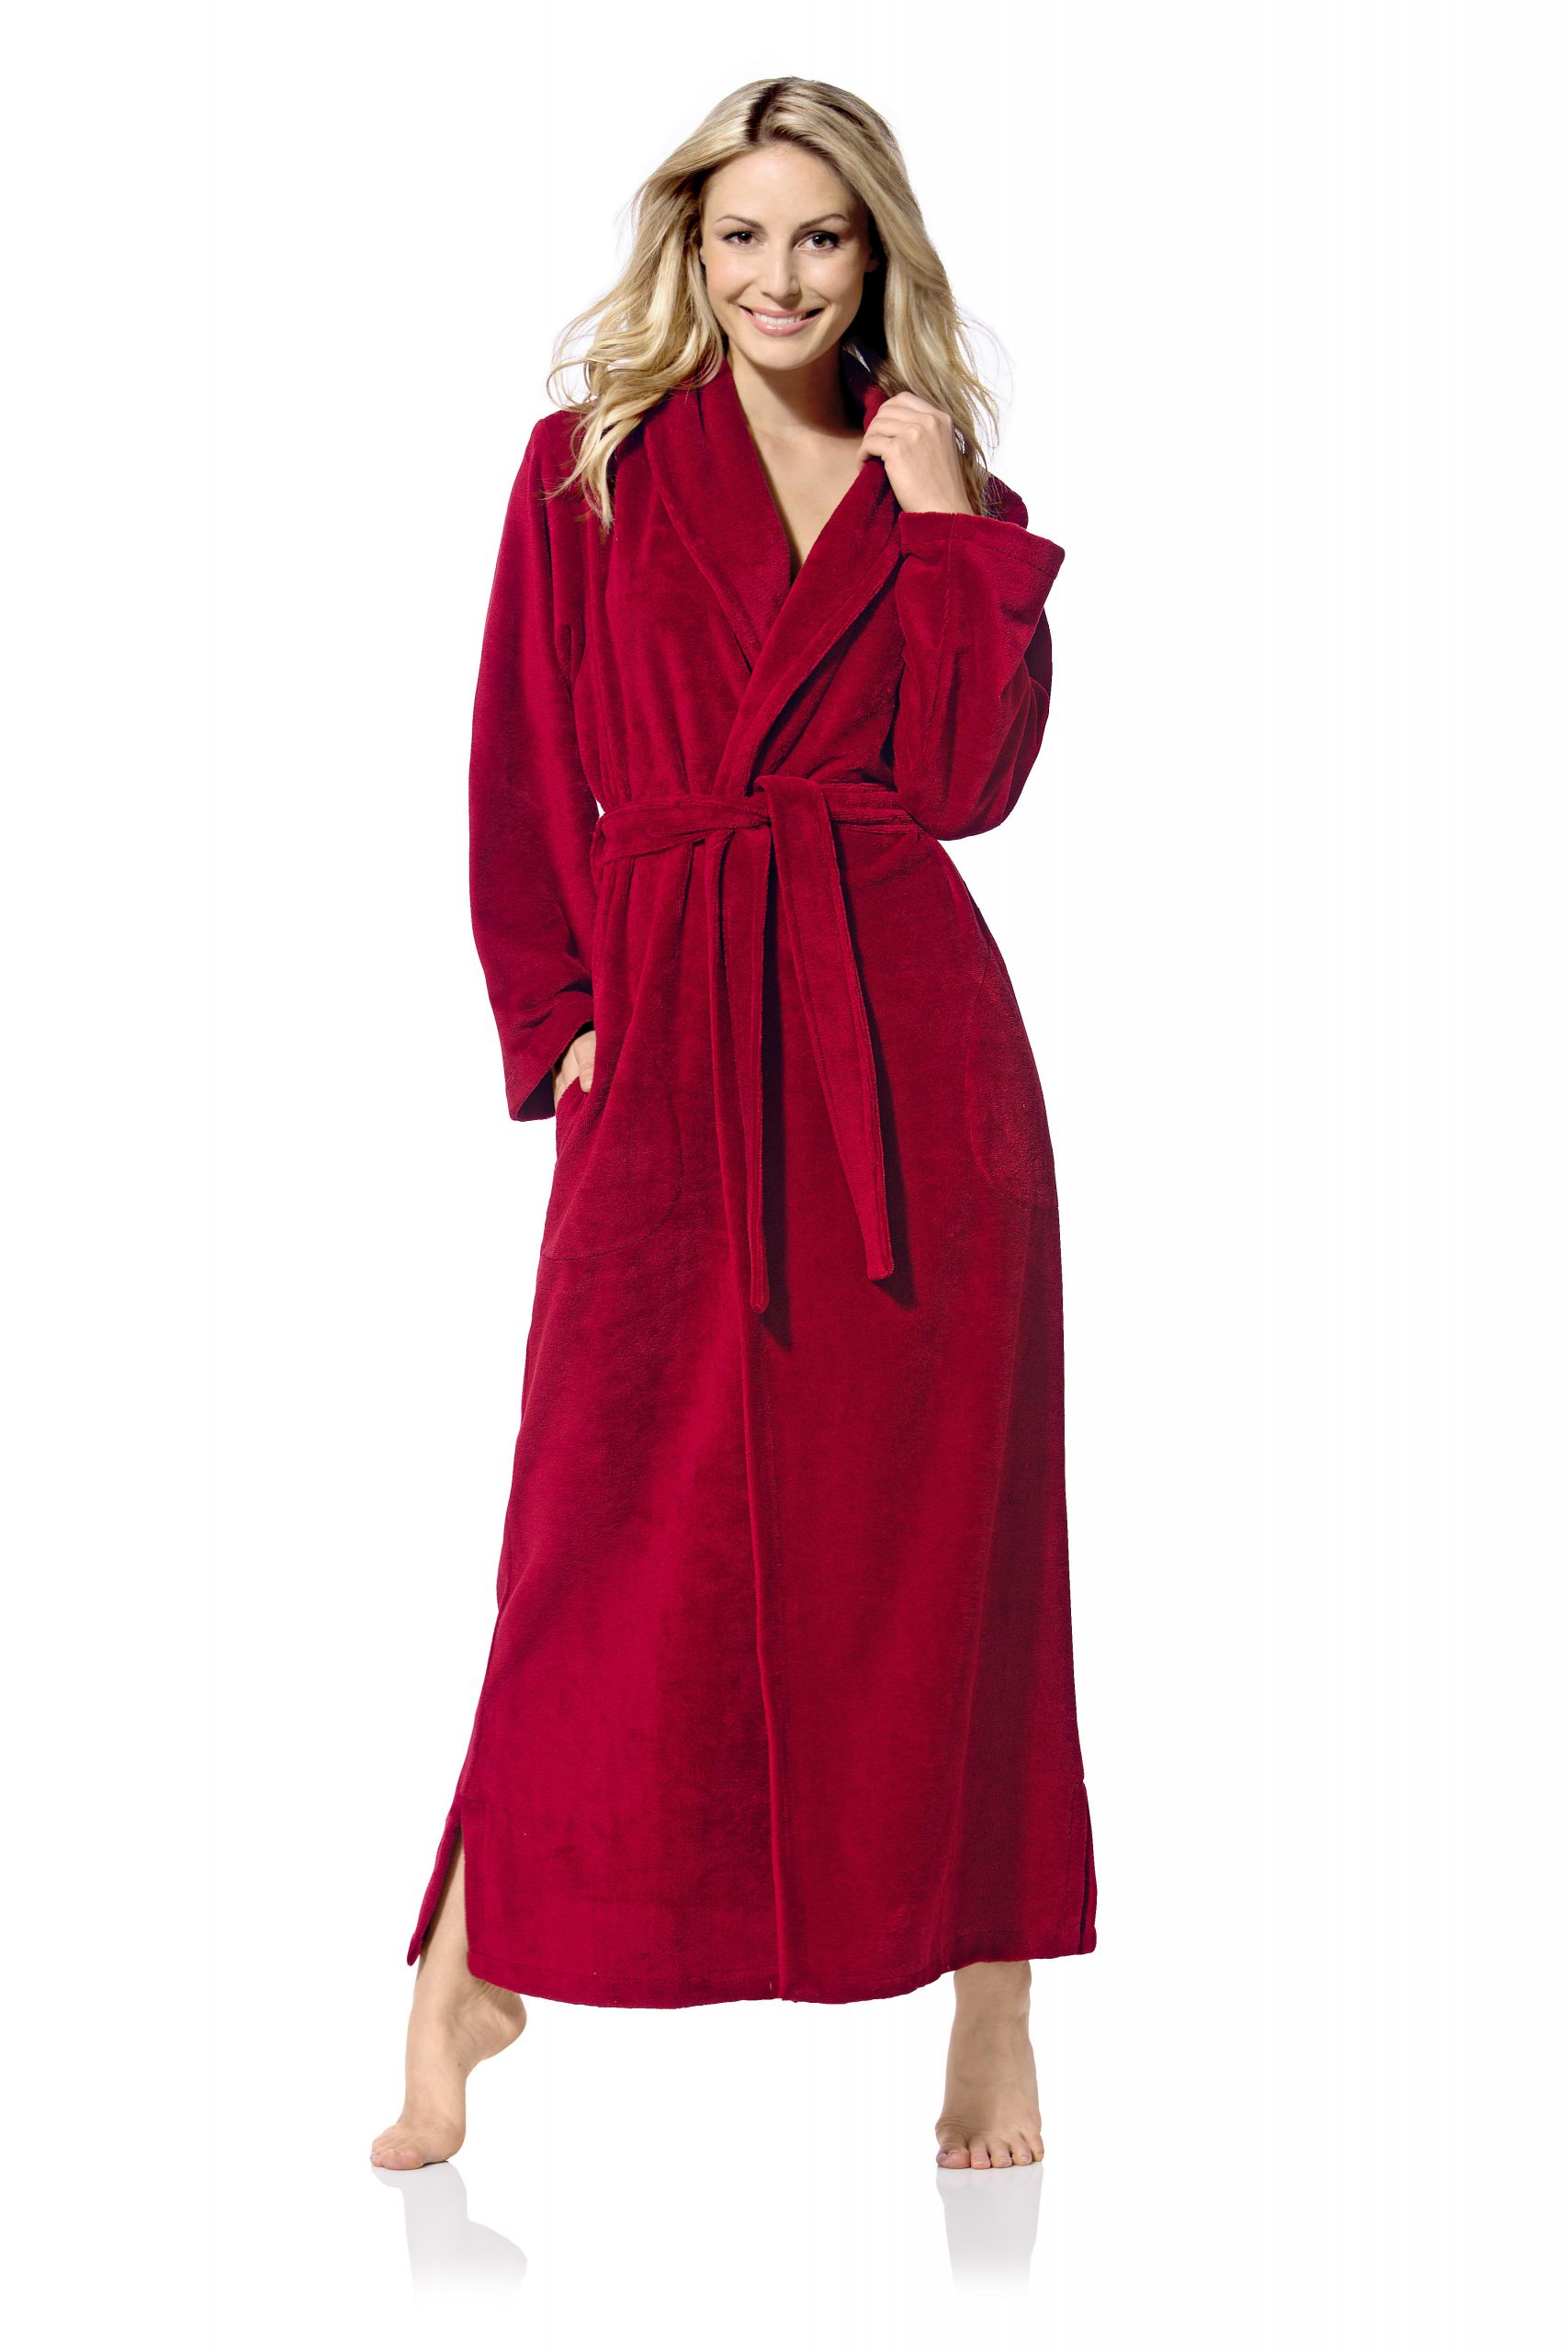 Federaal impliciet Nuchter rode lange elegante badjas voor dames